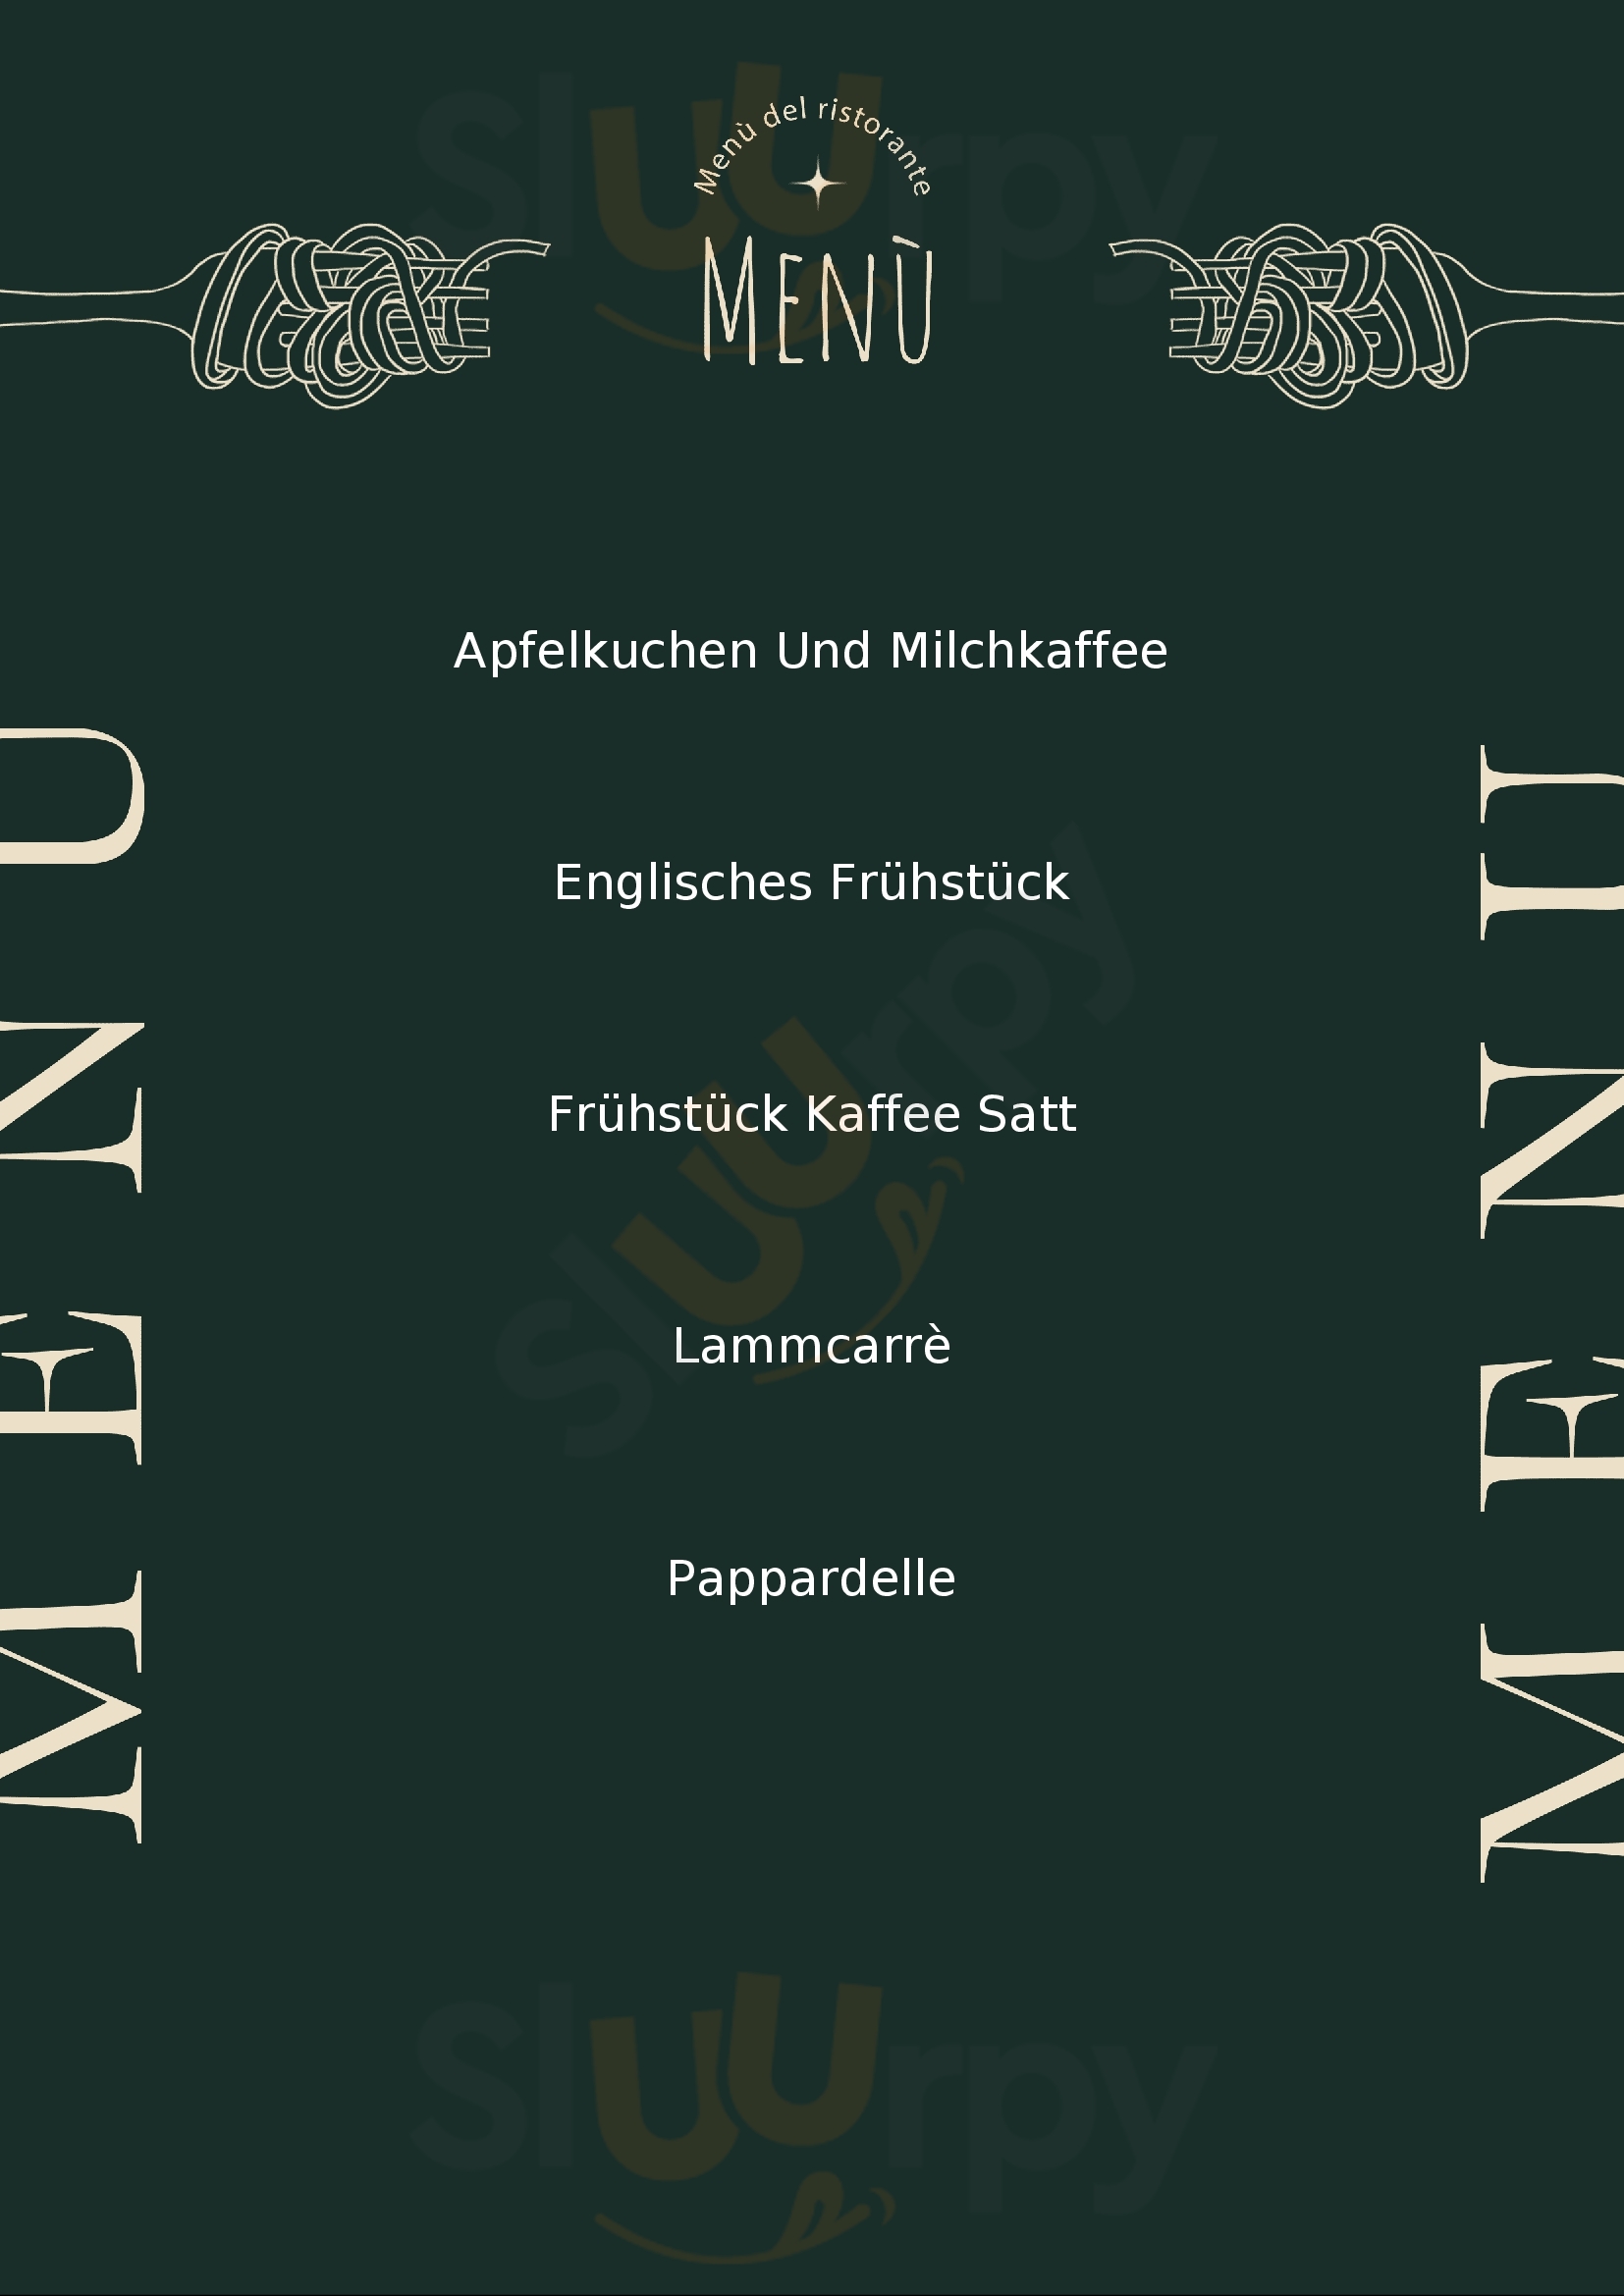 Café Lugenstein Verden (Aller) Menu - 1